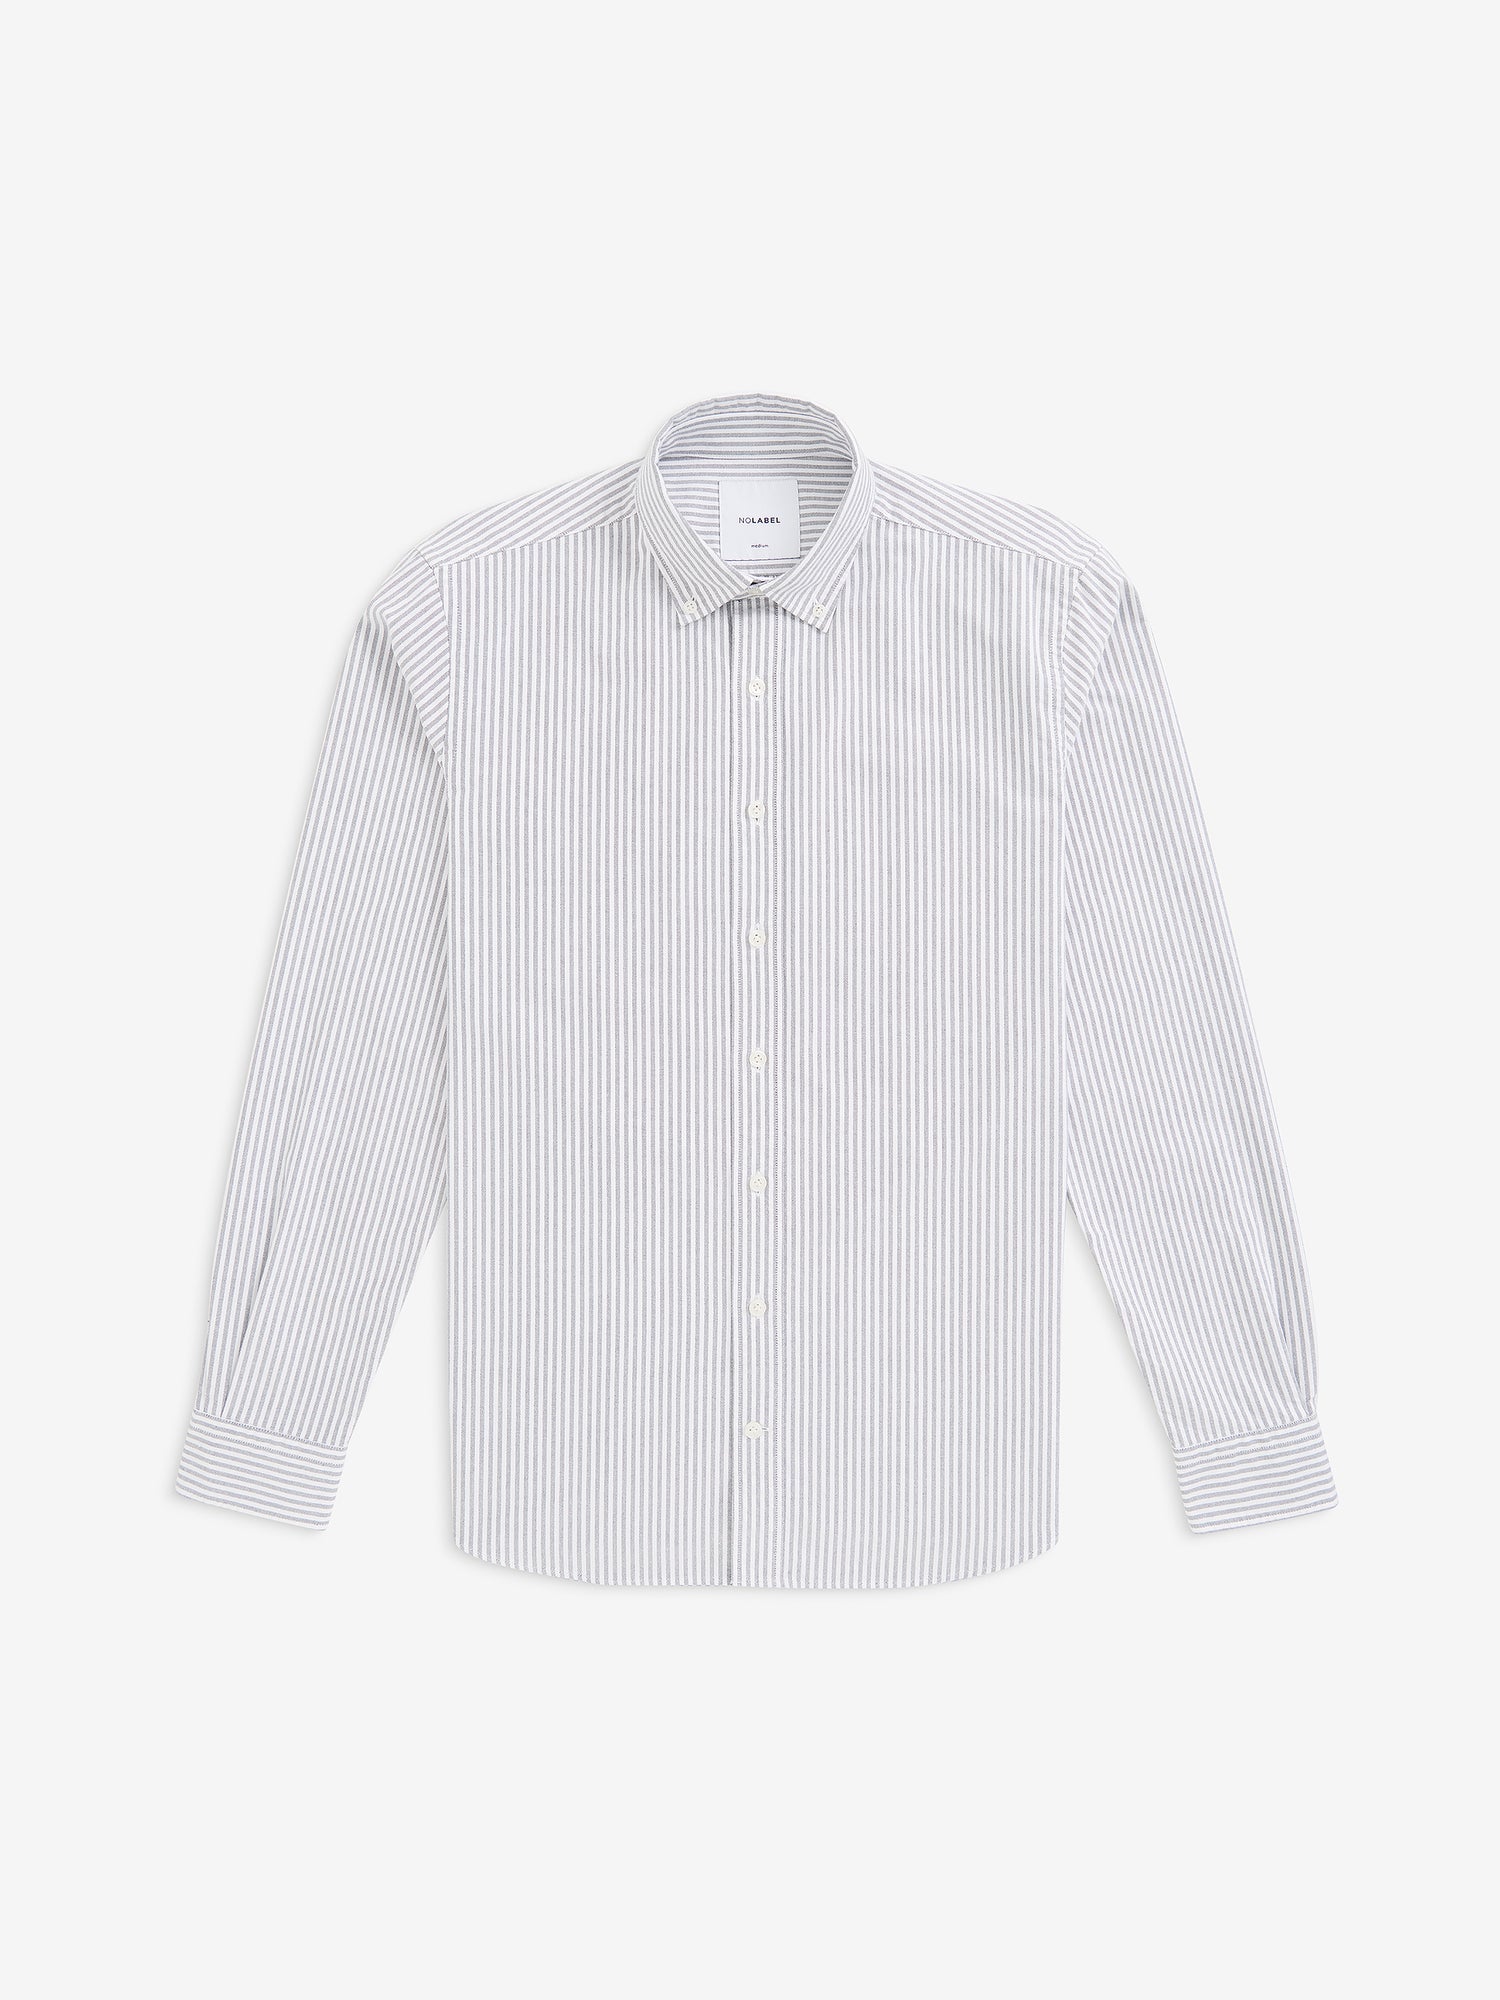 Felix Striped Oxford Cotton SH10208-NVY